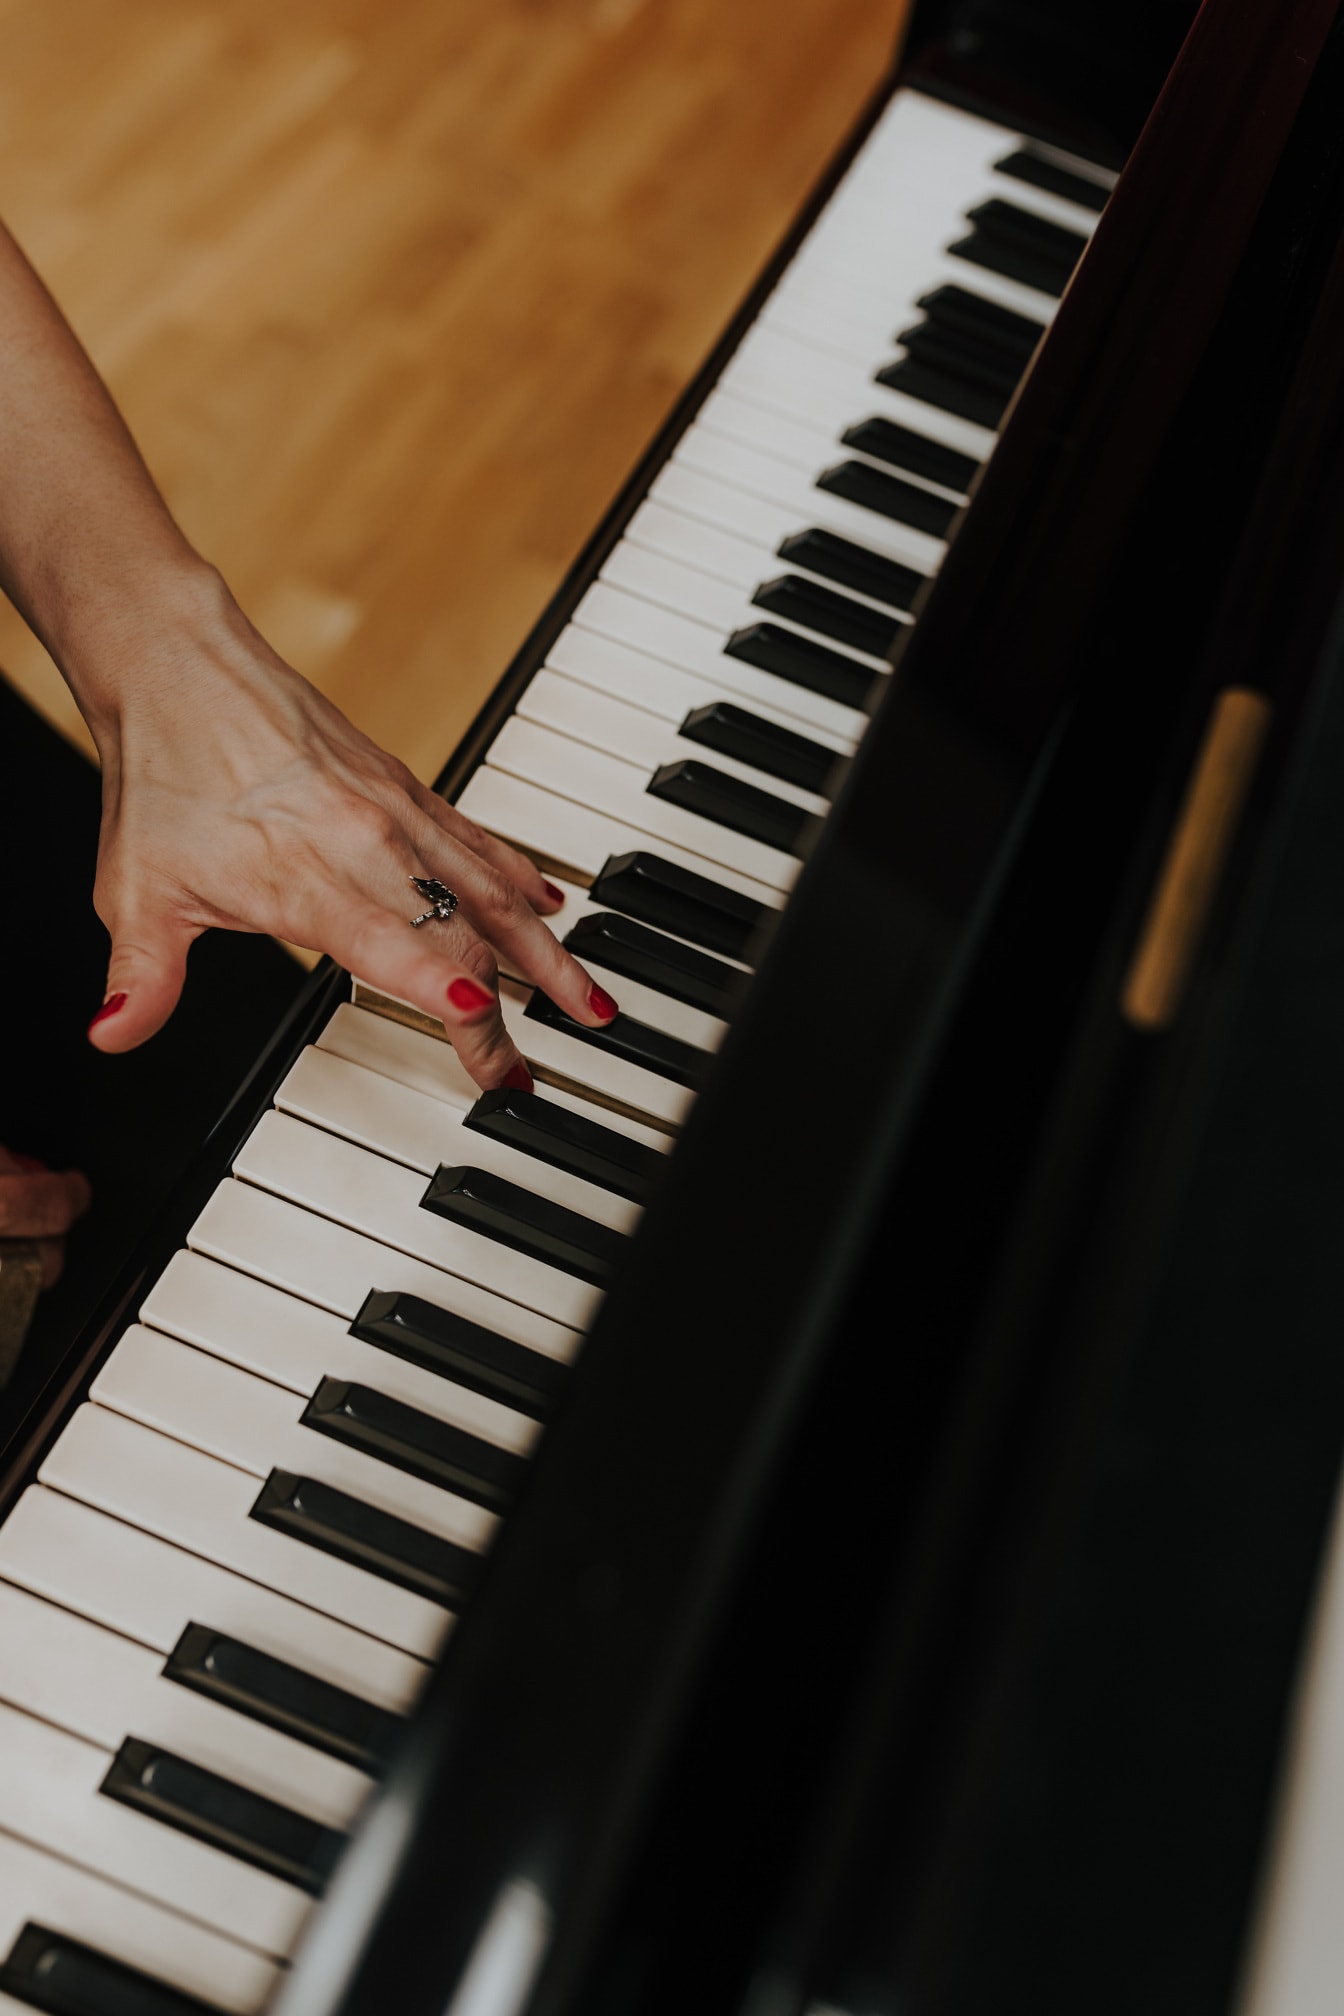 Người phụ nữ chơi piano cận cảnh sơn móng tay màu đỏ trên ngón tay